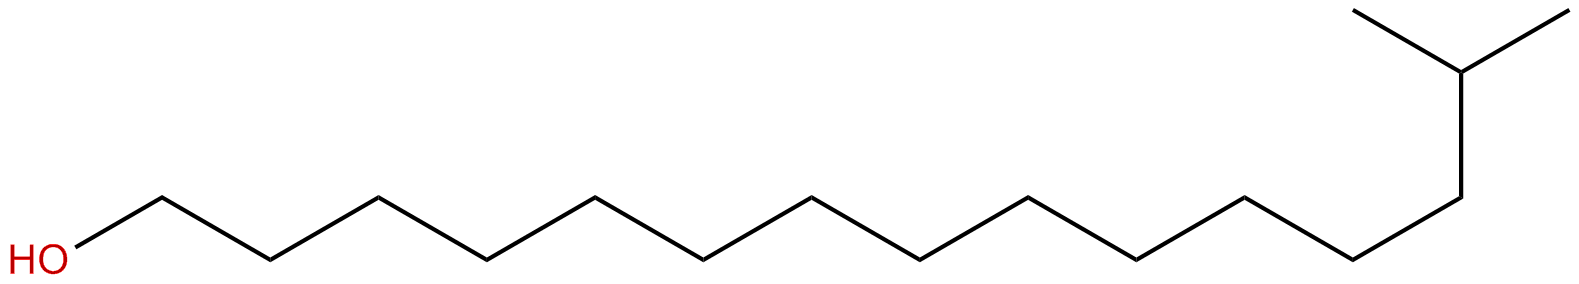 Image of 1-pentadecanol, 14-methyl-